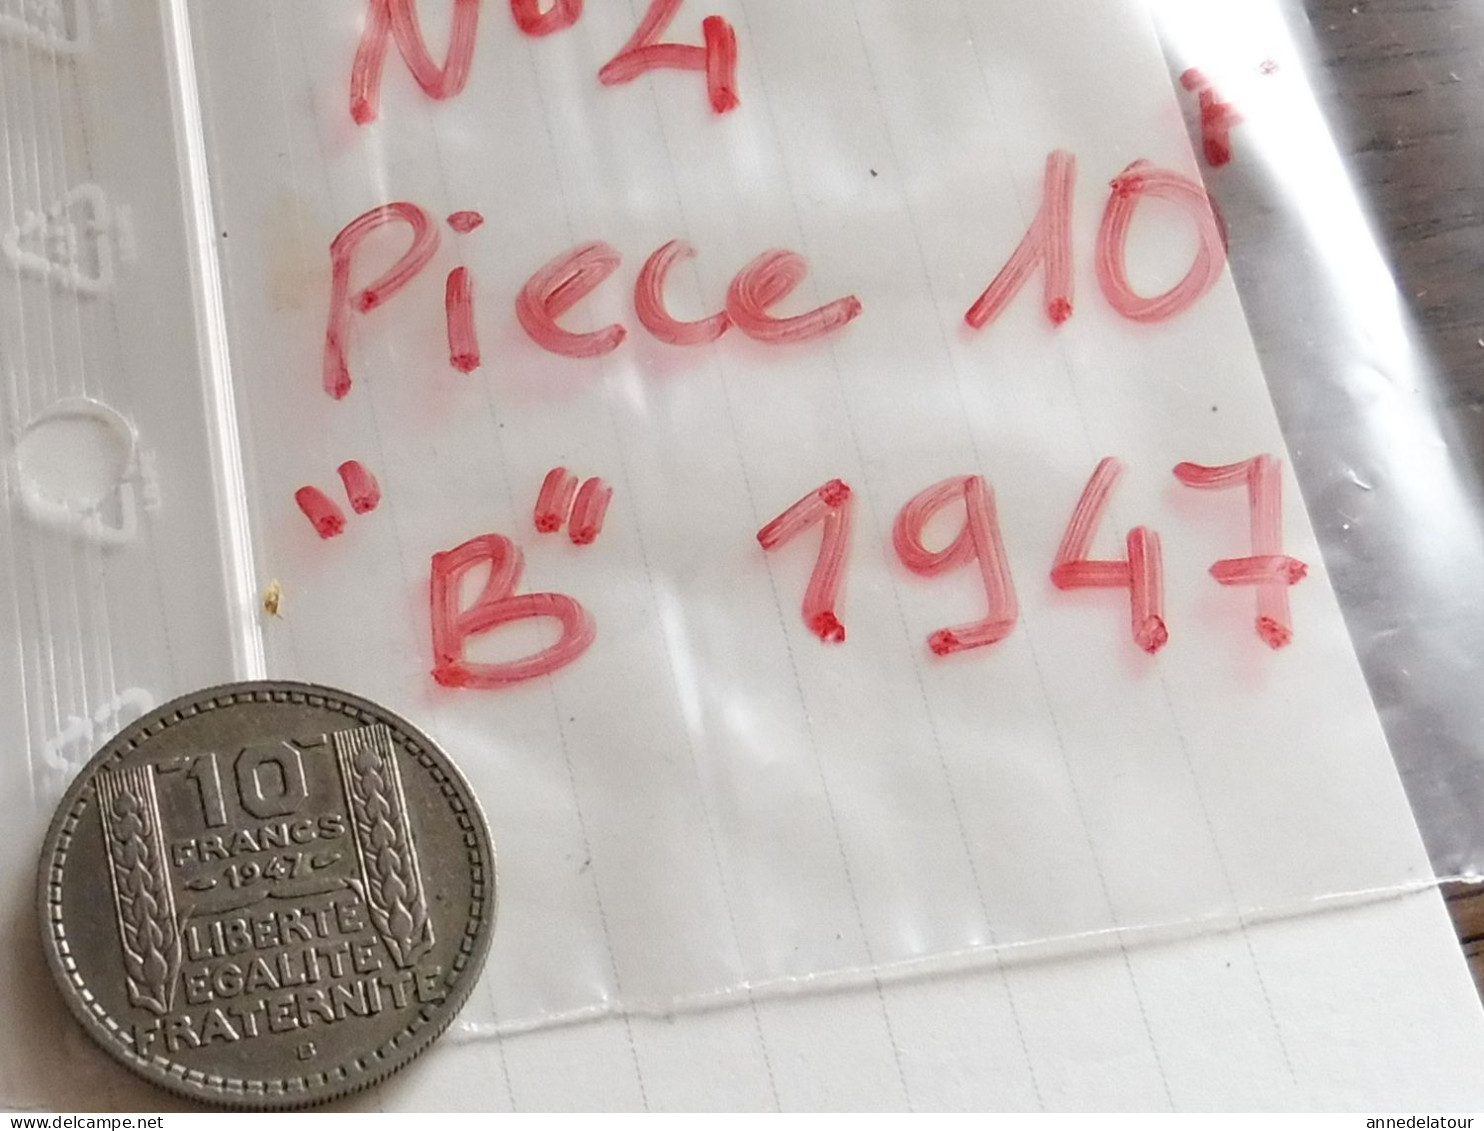 Année 1947  "B"  pièce  de  10 francs   (Turin ) (République Française)   en alliage nickel